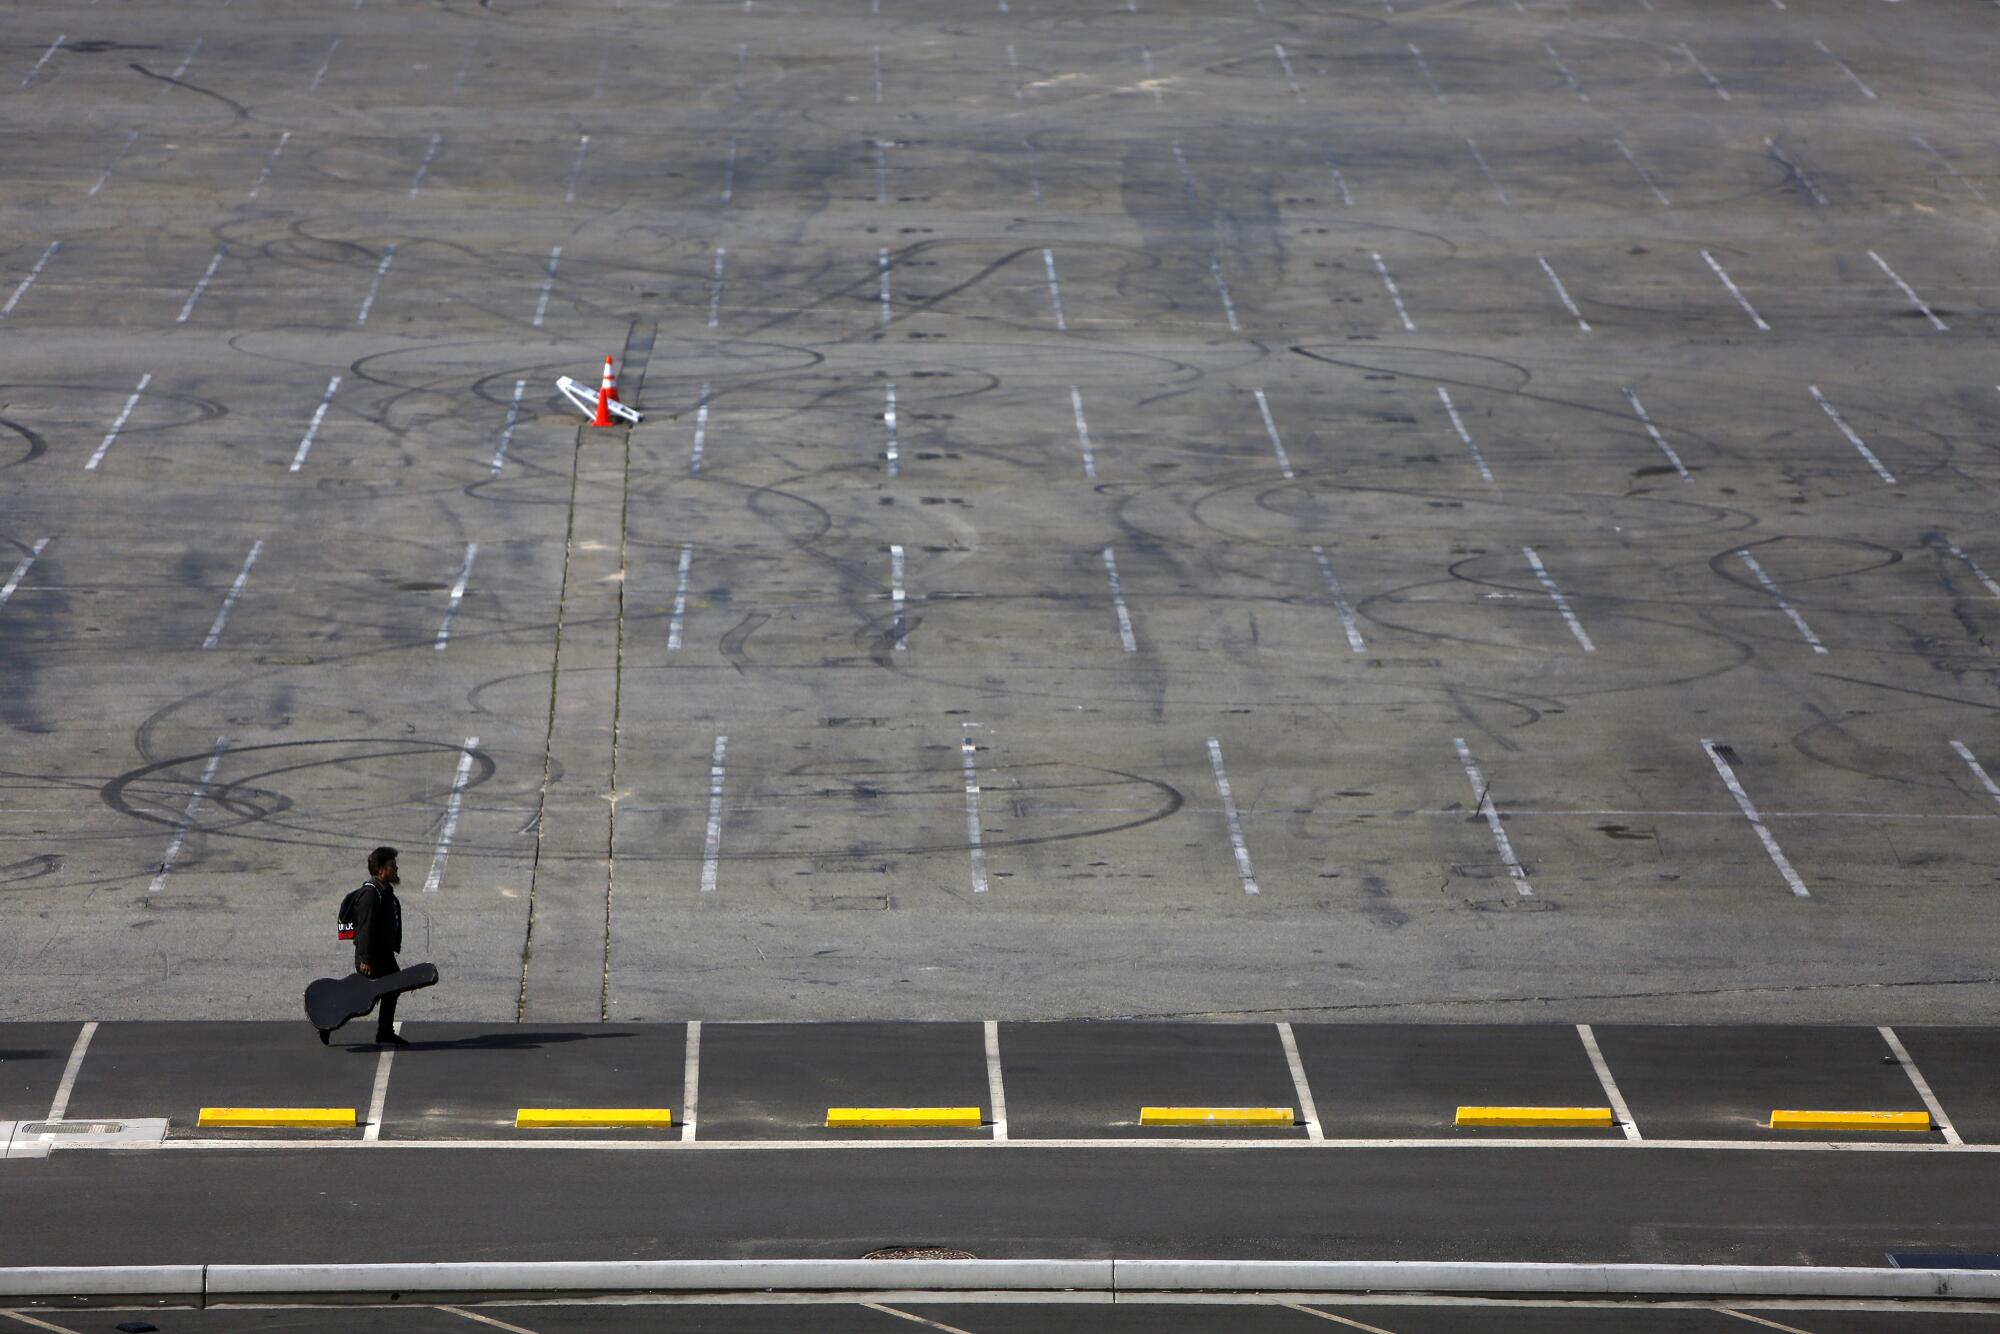 A musician walks across an empty parking lot in Los Angeles.